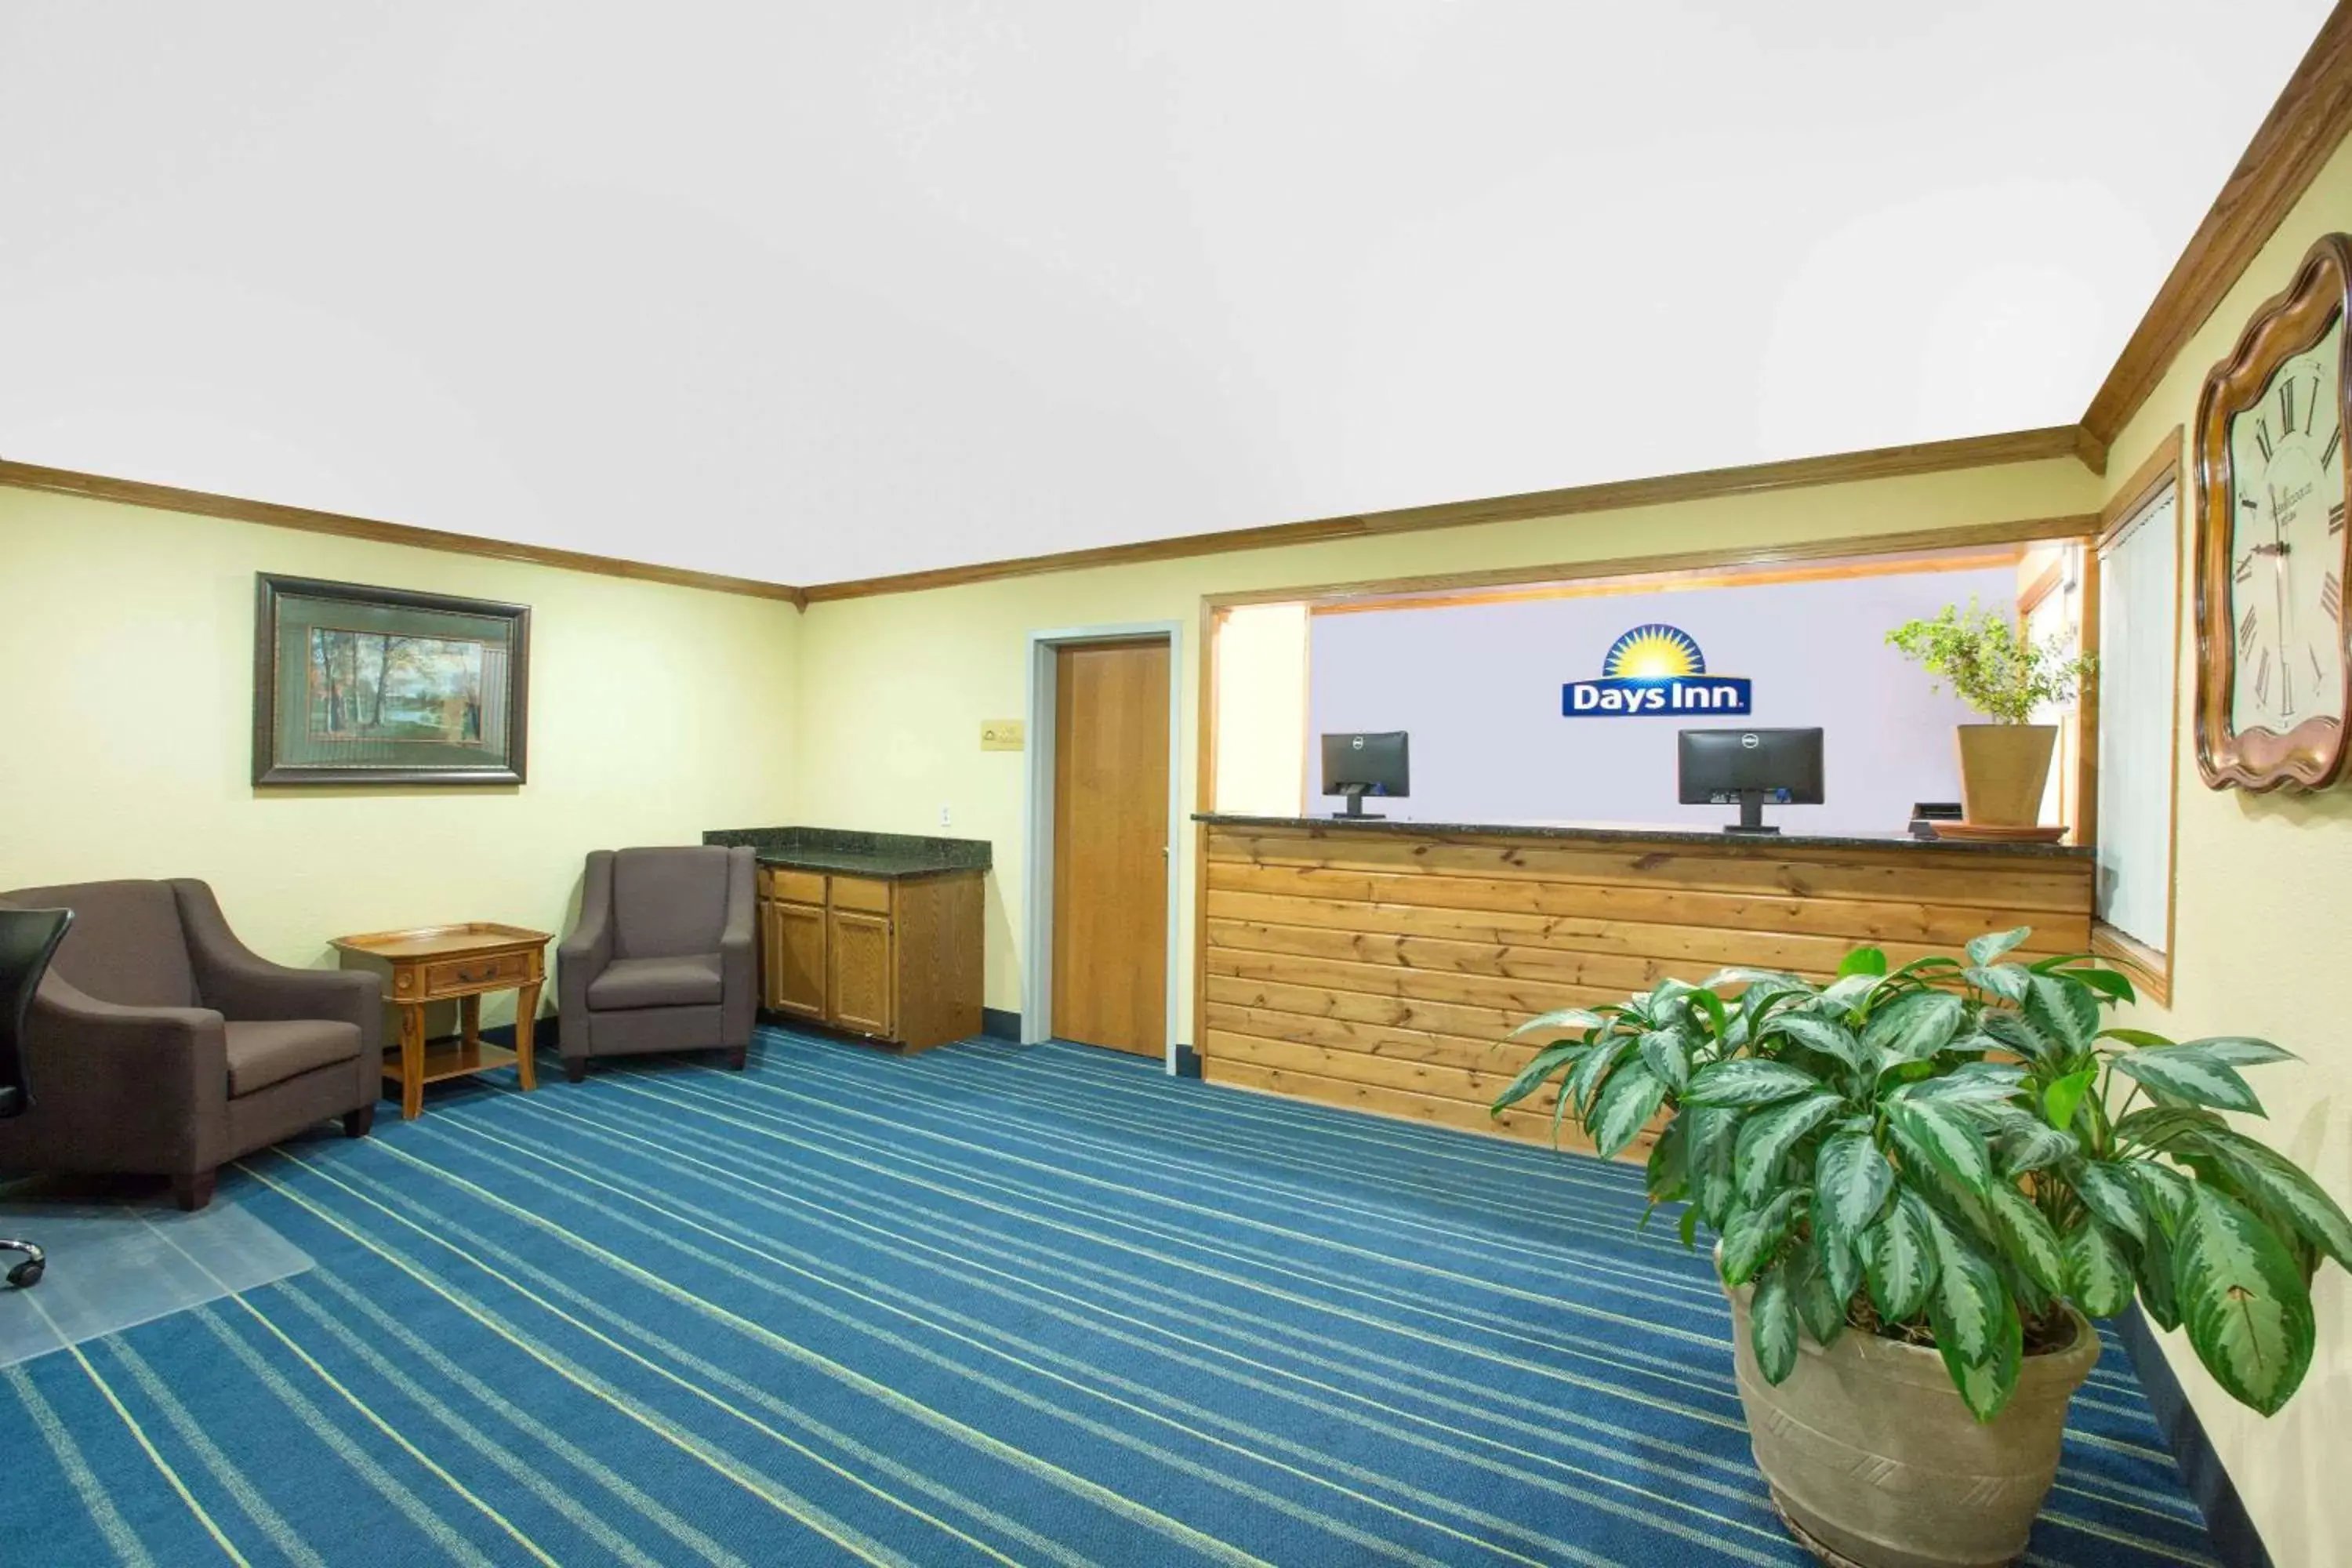 Lobby or reception in Days Inn by Wyndham Grand Island